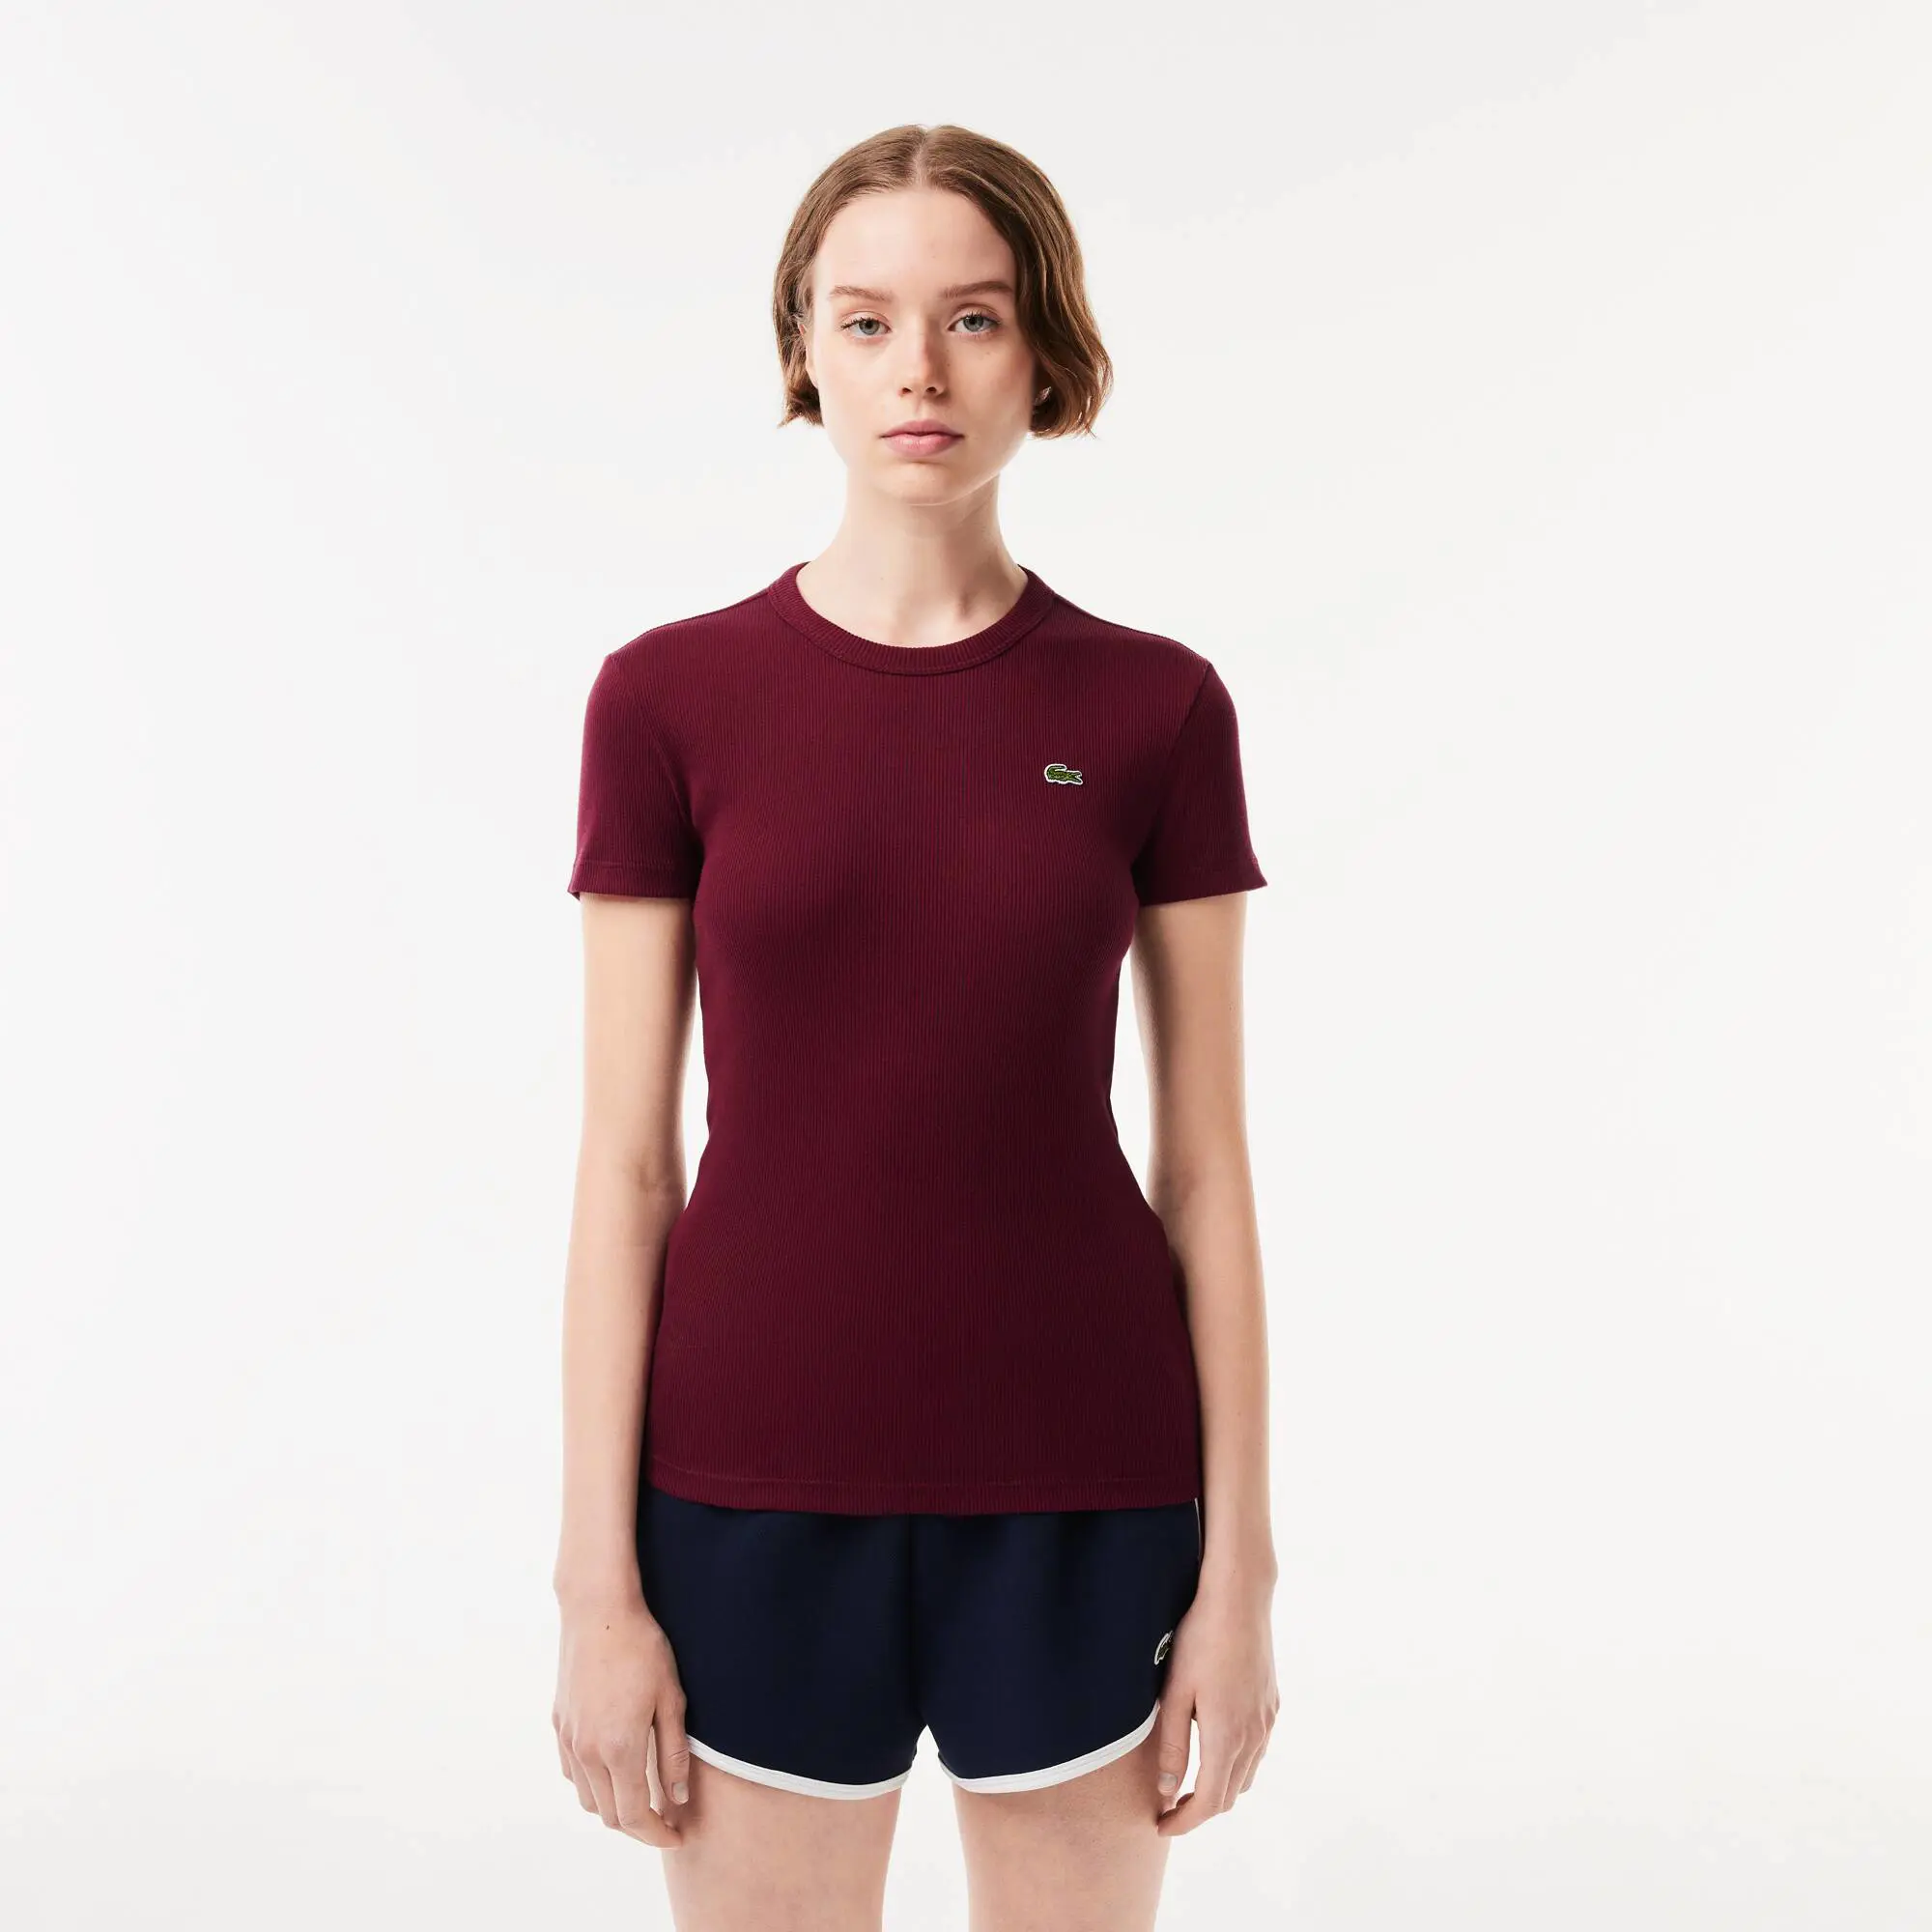 Lacoste Women’s Slim Fit Organic Cotton T-shirt. 1